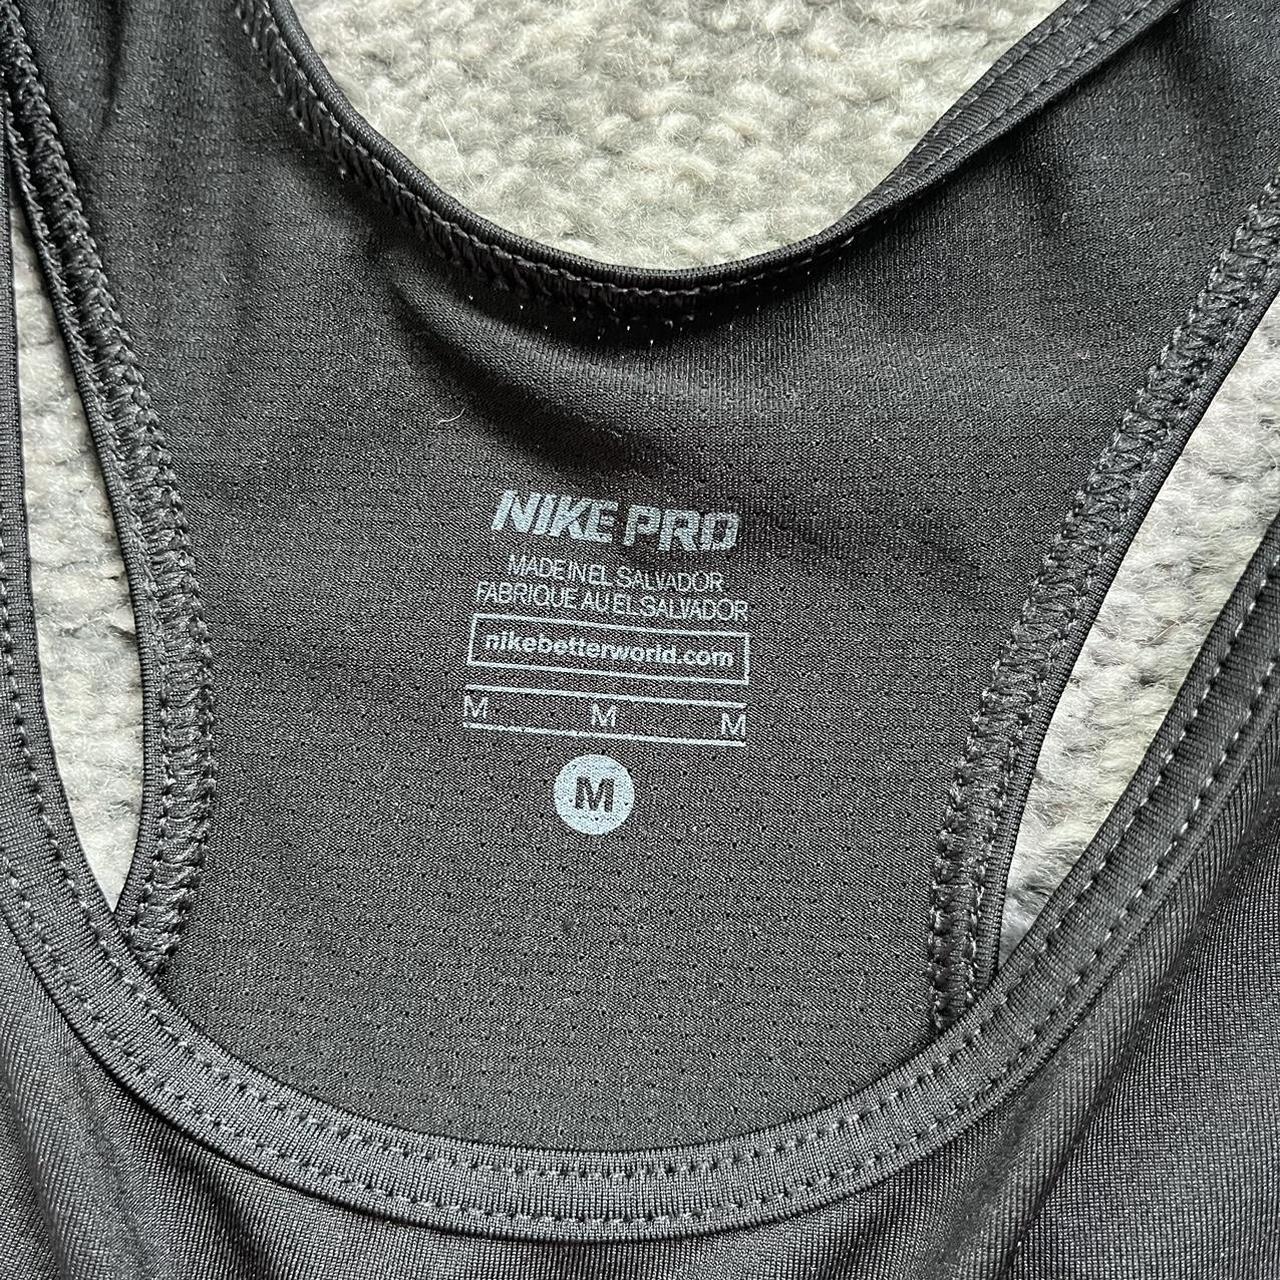 Nike Women's Vest | Depop